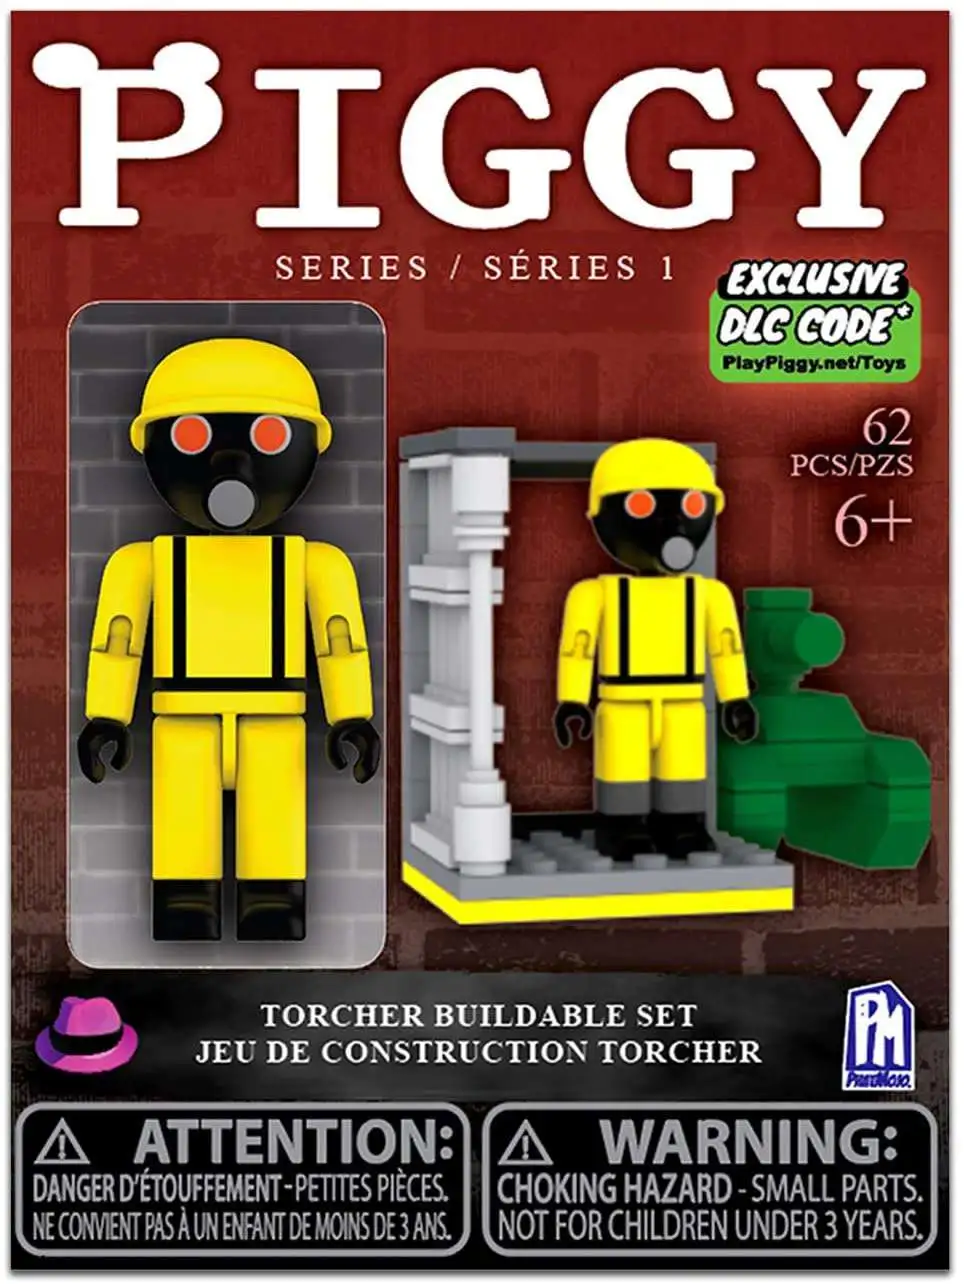 PIGGY Roblox Carnival Buildable Building Set w/ Figures & DLC Code